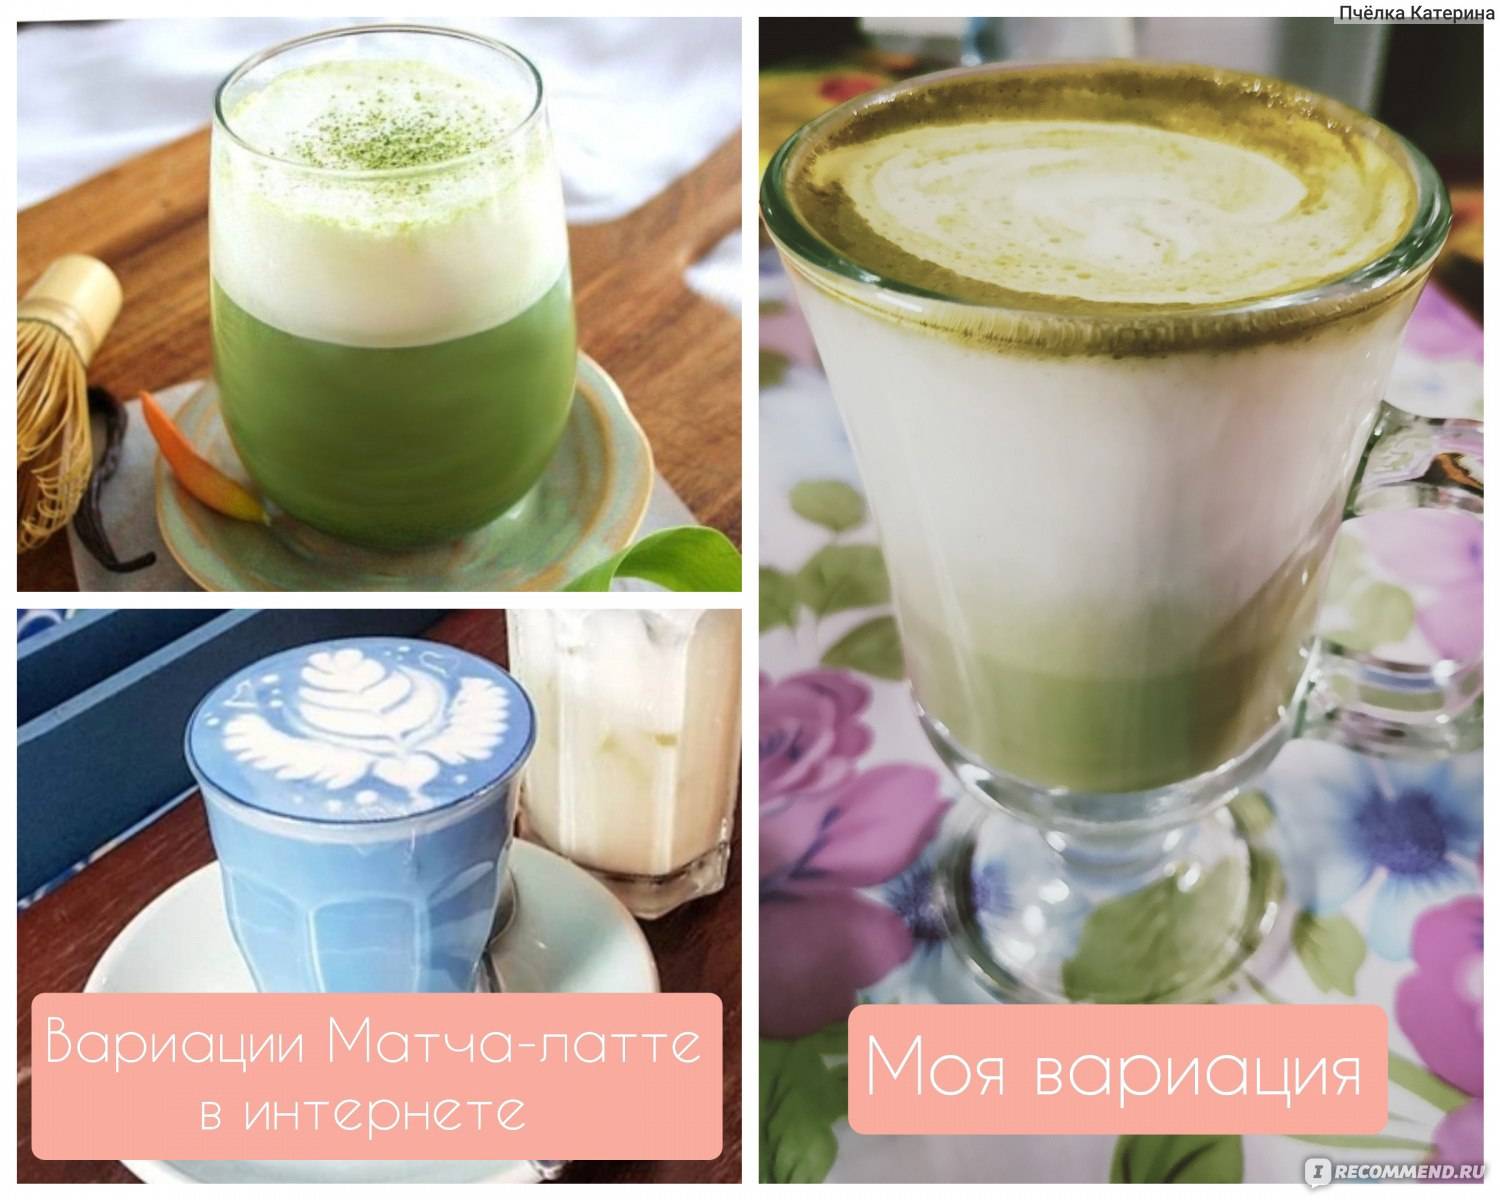 Чай матча латте: рецепт зеленого чая matcha latte ✓ как приготовить напиток, состав, калорийность, польза и вред ✓ 101 чай